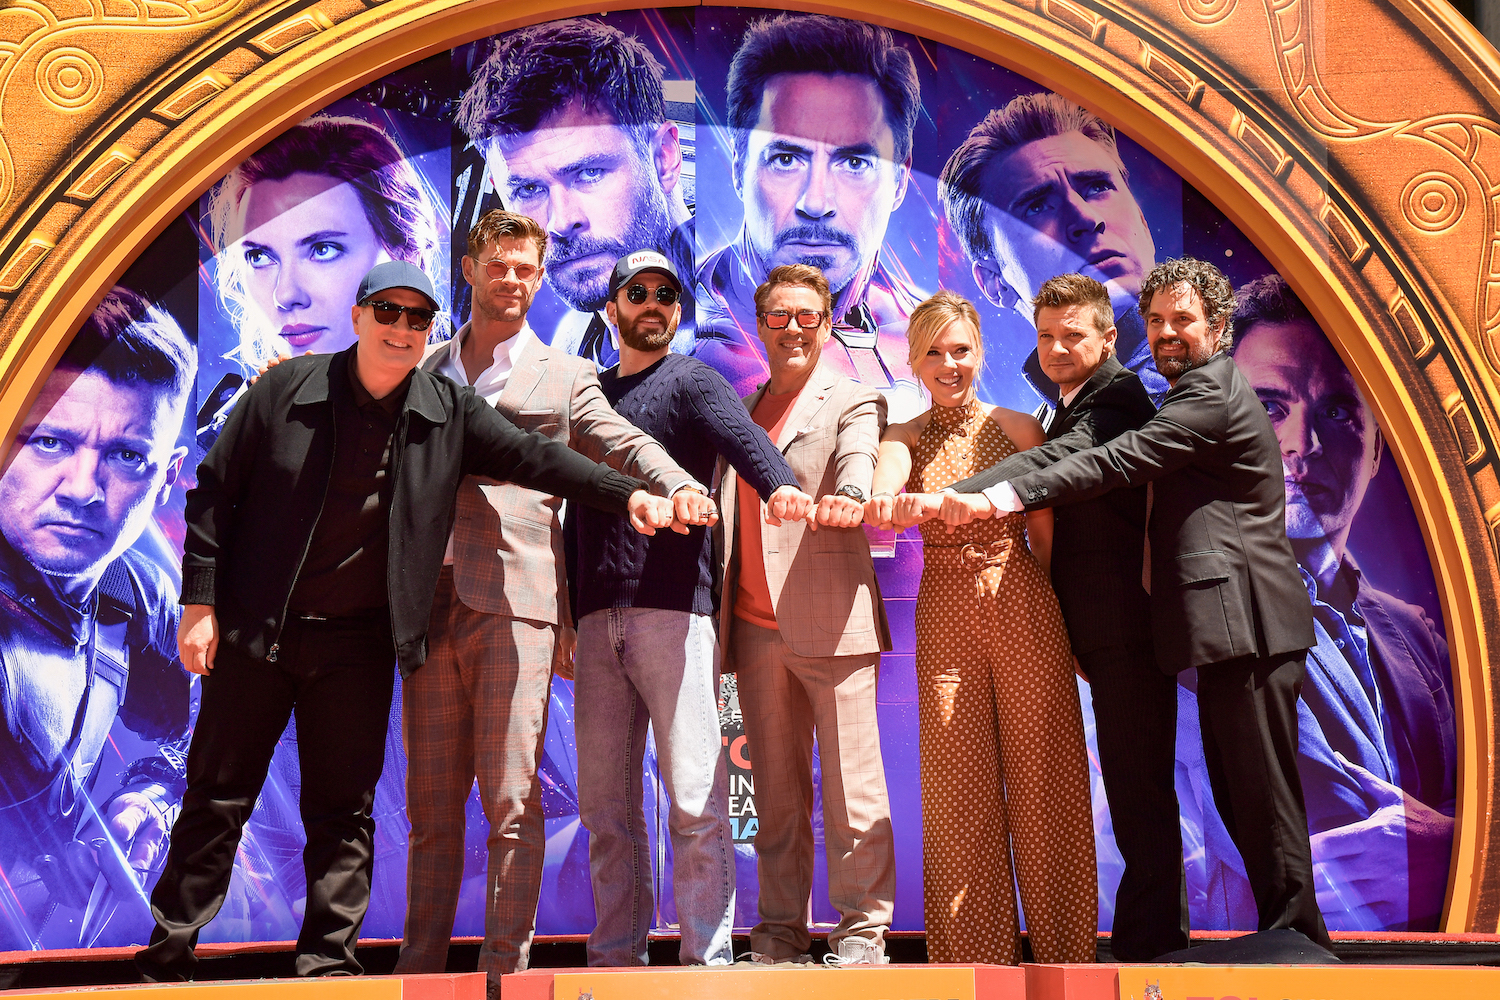 Kevin Feige, Chris Hemsworth, Chris Evans, Robert Downey Jr., Scarlett Johansson, Mark Ruffalo, and Jeremy Renner